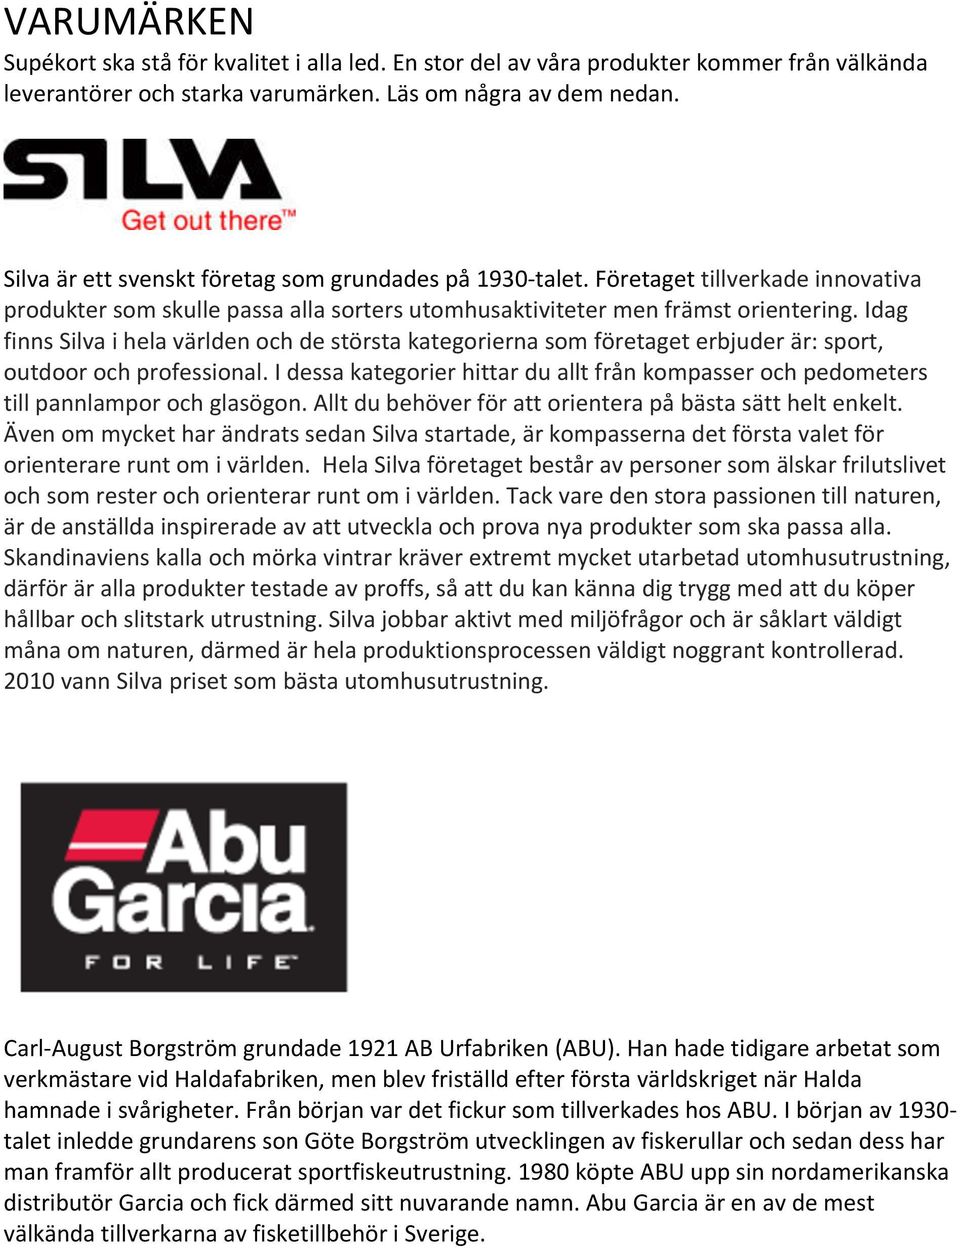 Idag finns Silva i hela världen och de största kategorierna som företaget erbjuder är: sport, outdoor och professional.